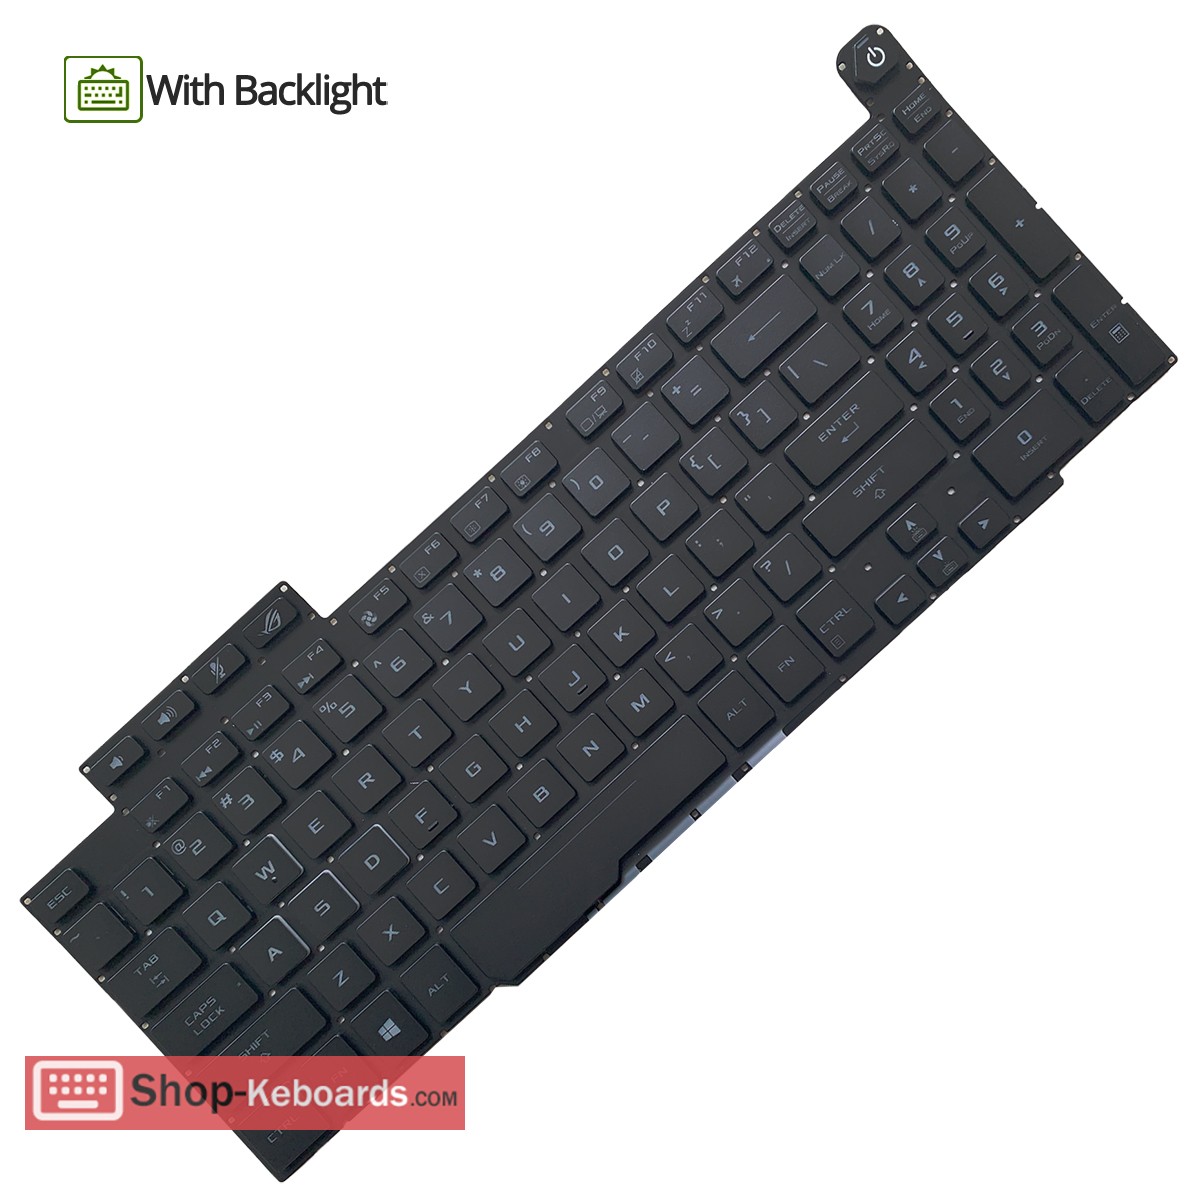 Asus 0KNR0-6612RU00  Keyboard replacement